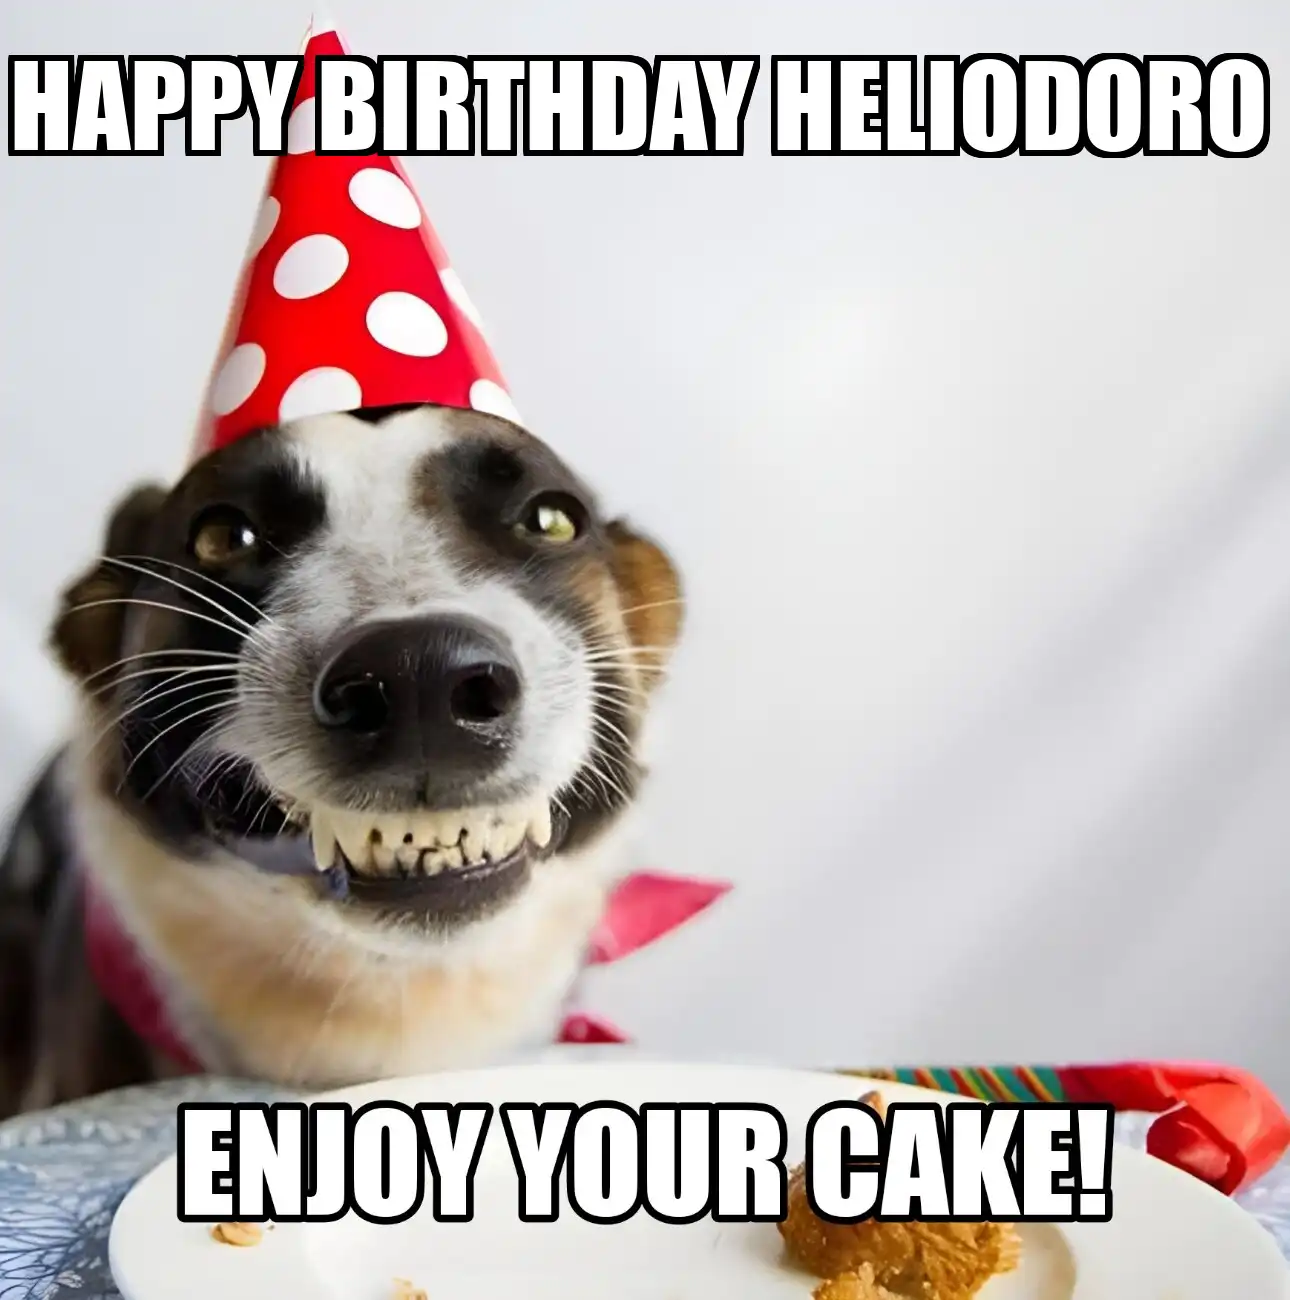 Happy Birthday Heliodoro Enjoy Your Cake Dog Meme